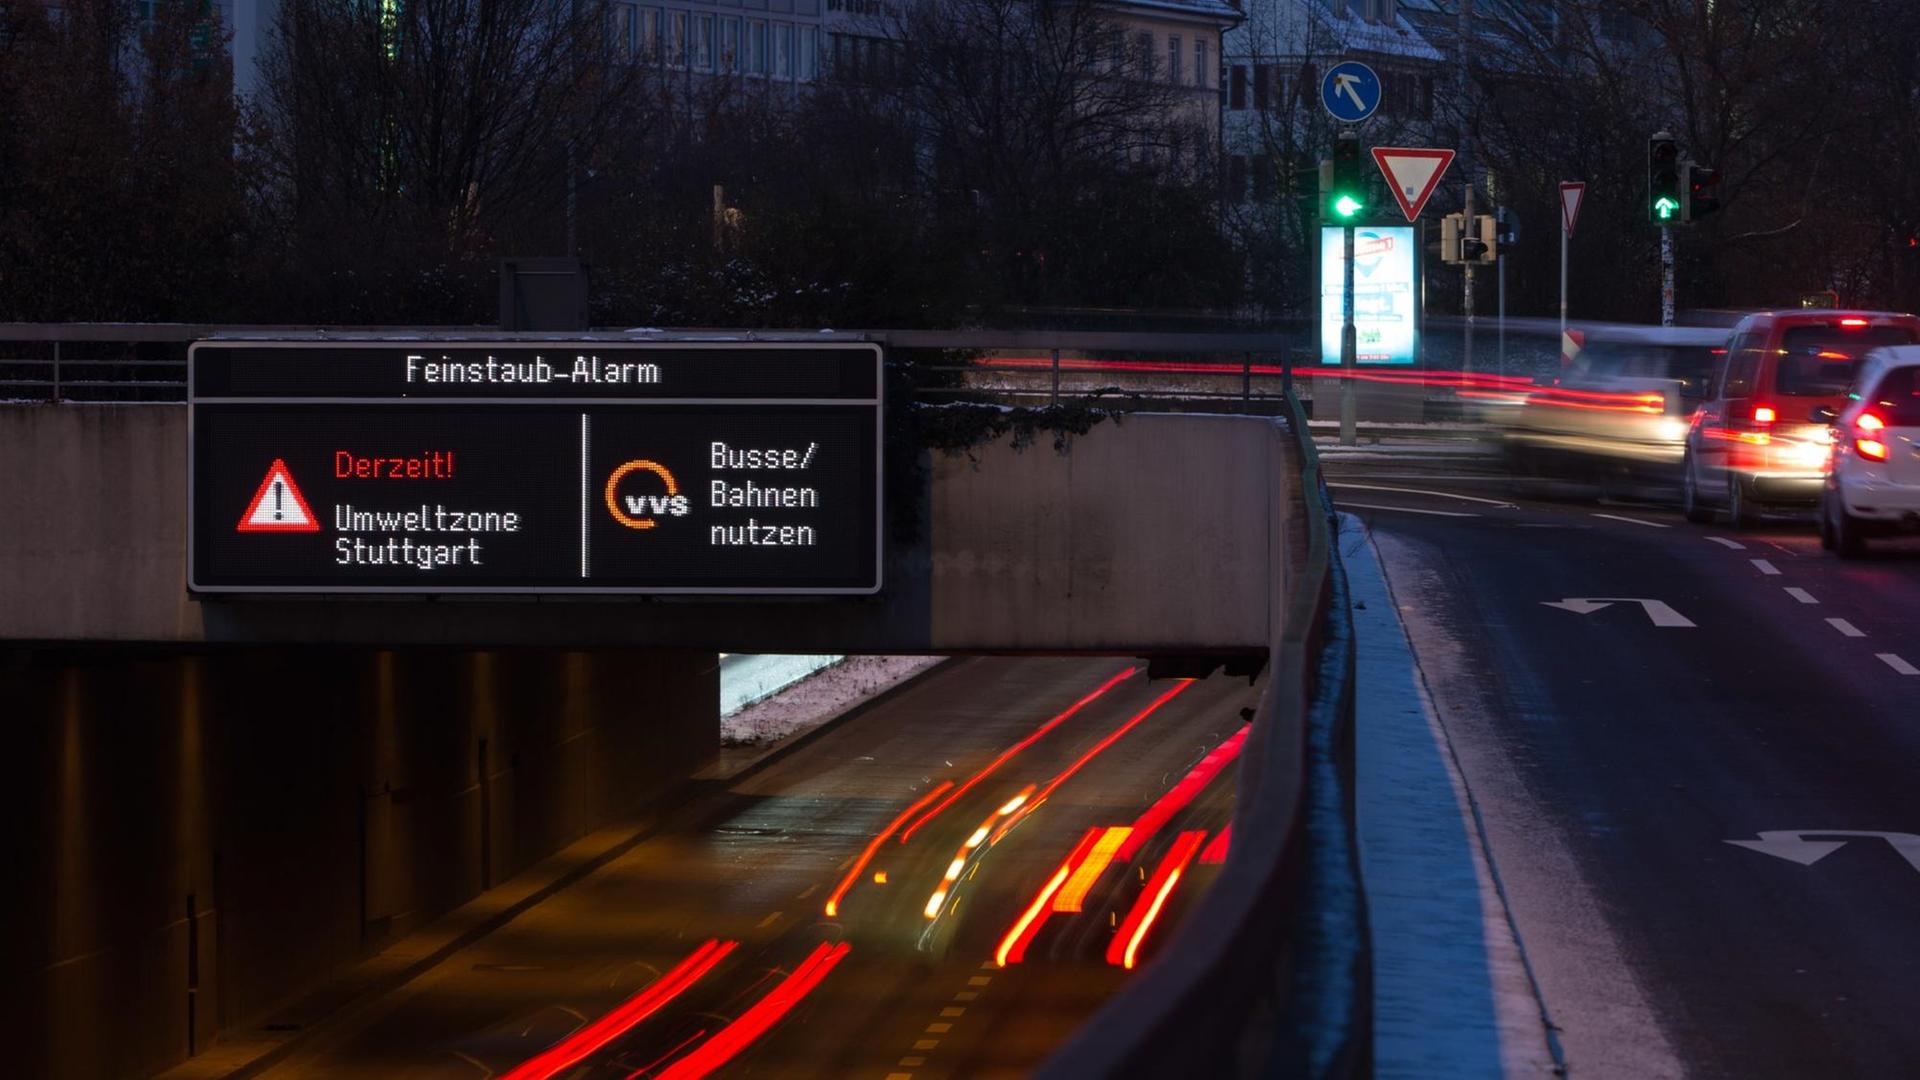 Autos fahren am 18.01.2016 in Stuttgart (Baden-Württemberg) durch die Innenstadt, während auf einer Anzeige ein Feinstaub-Alarm für die Umweltzone Stuttgart angezeigt und auf öffentliche Verkehrsmittel hingewiesen wird.